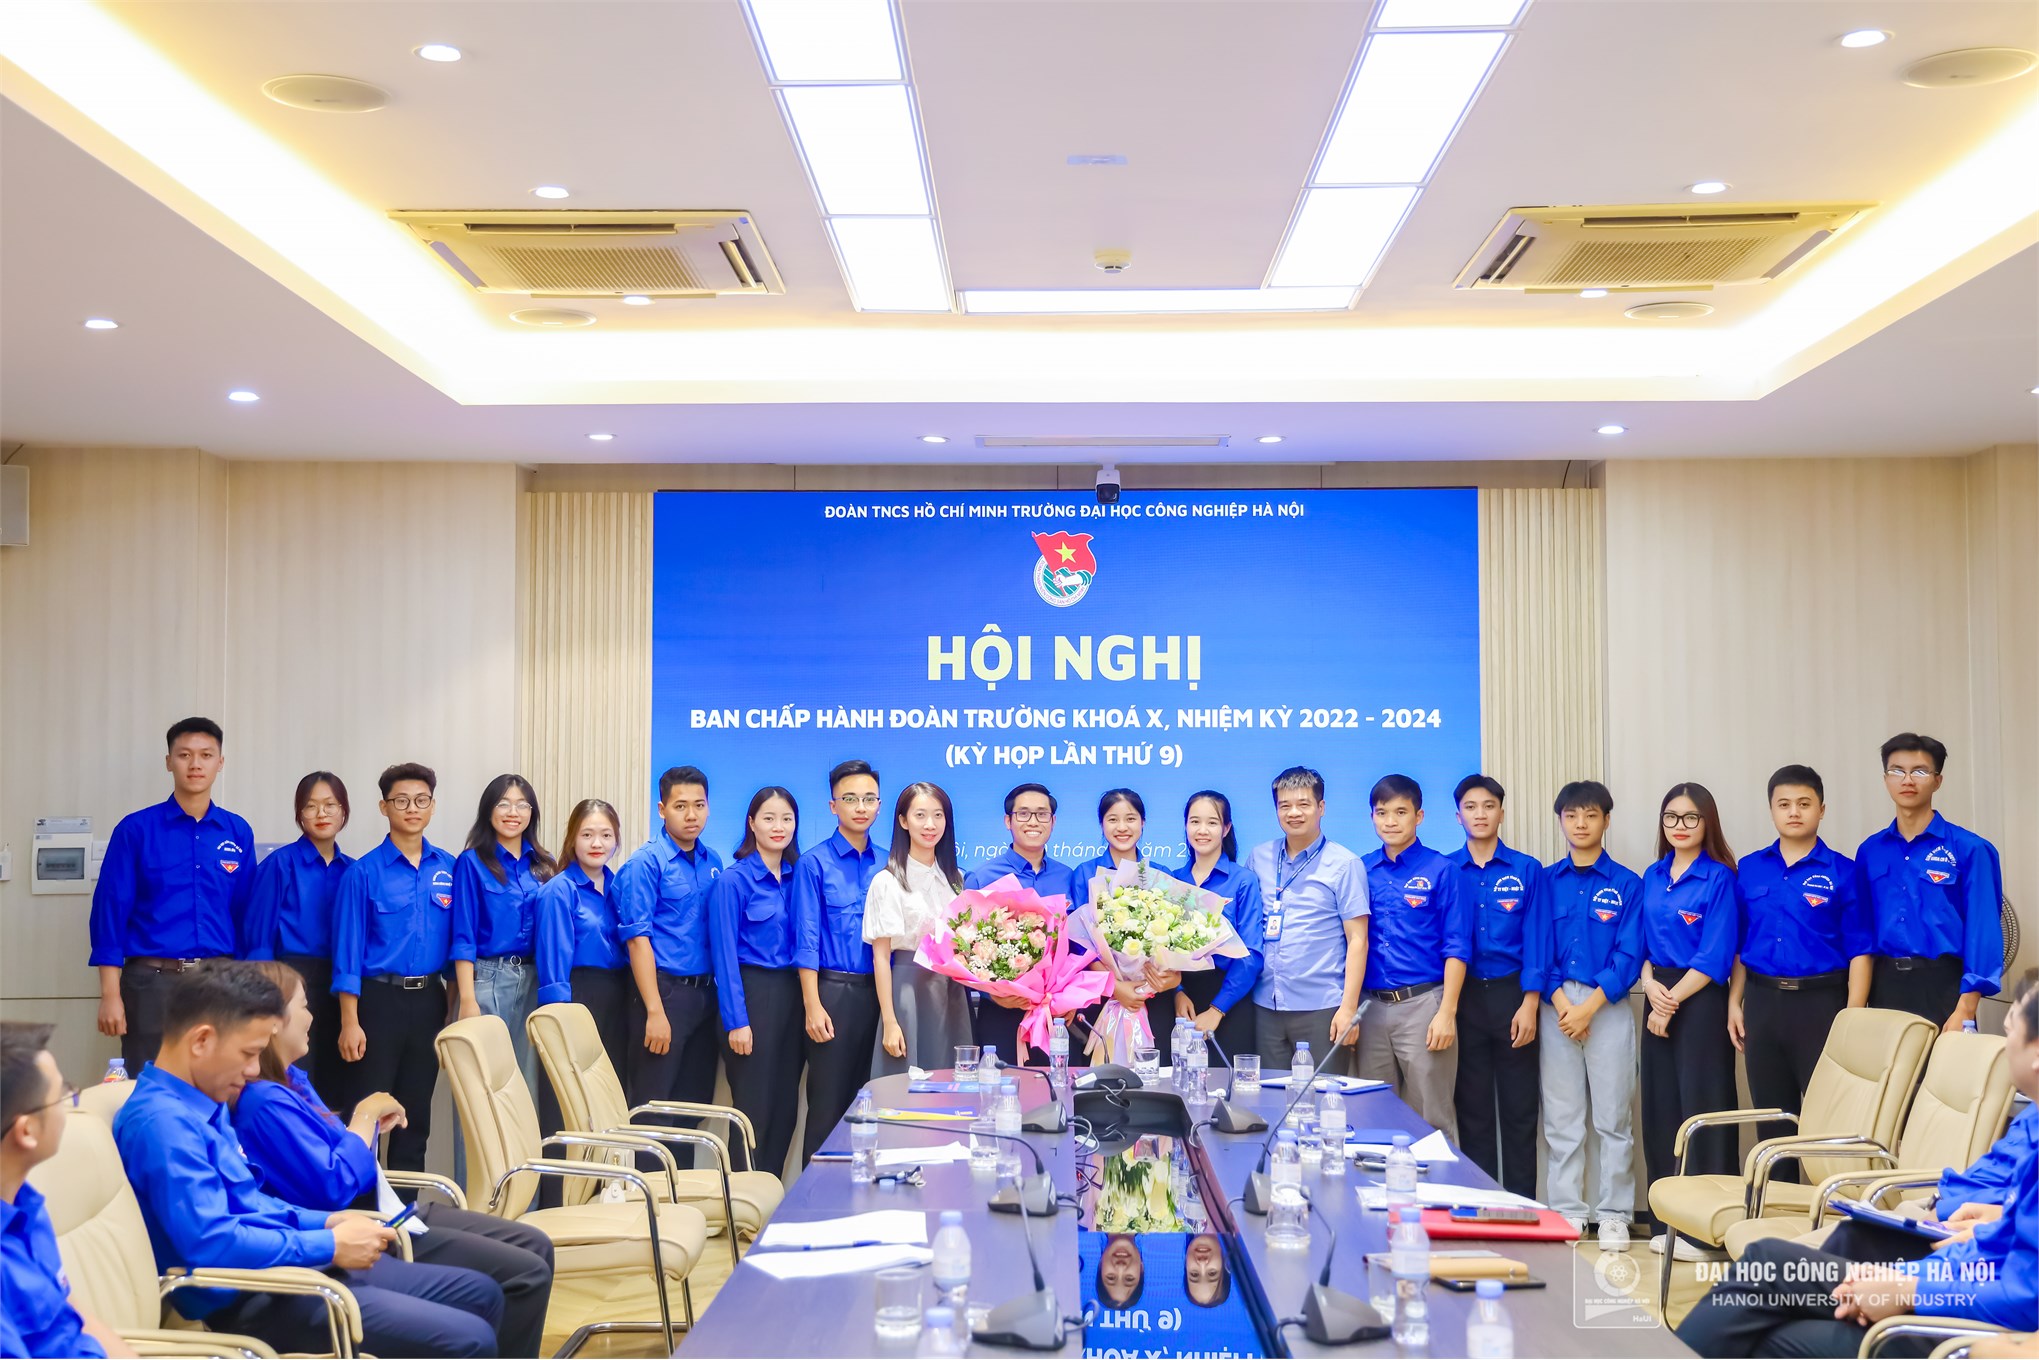 Sinh viên Trần Thị Hương Giang được bầu giữ chức Chủ tịch Hội sinh viên Trường Đại học Công nghiệp Hà Nội